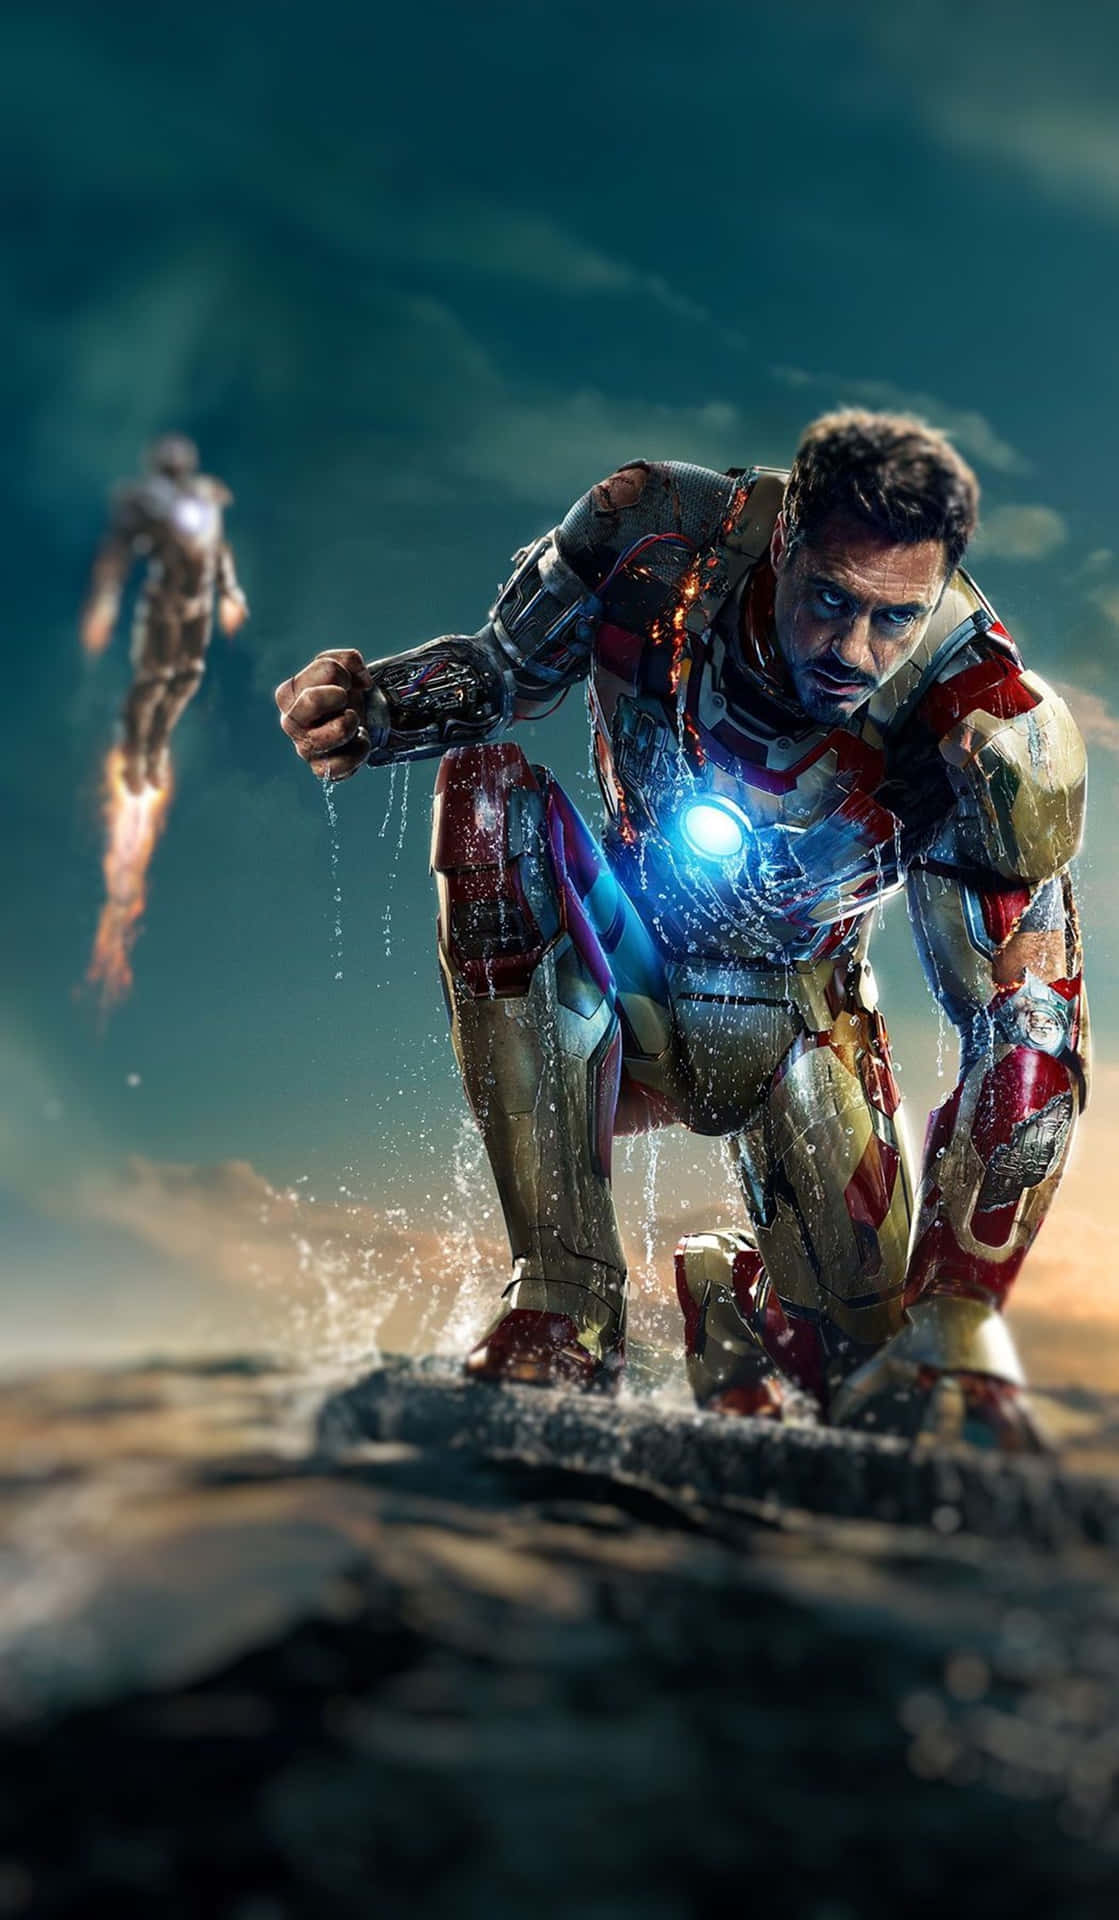 Download Avenger Tony Stark Iron Man 4k Mobile Wallpaper 